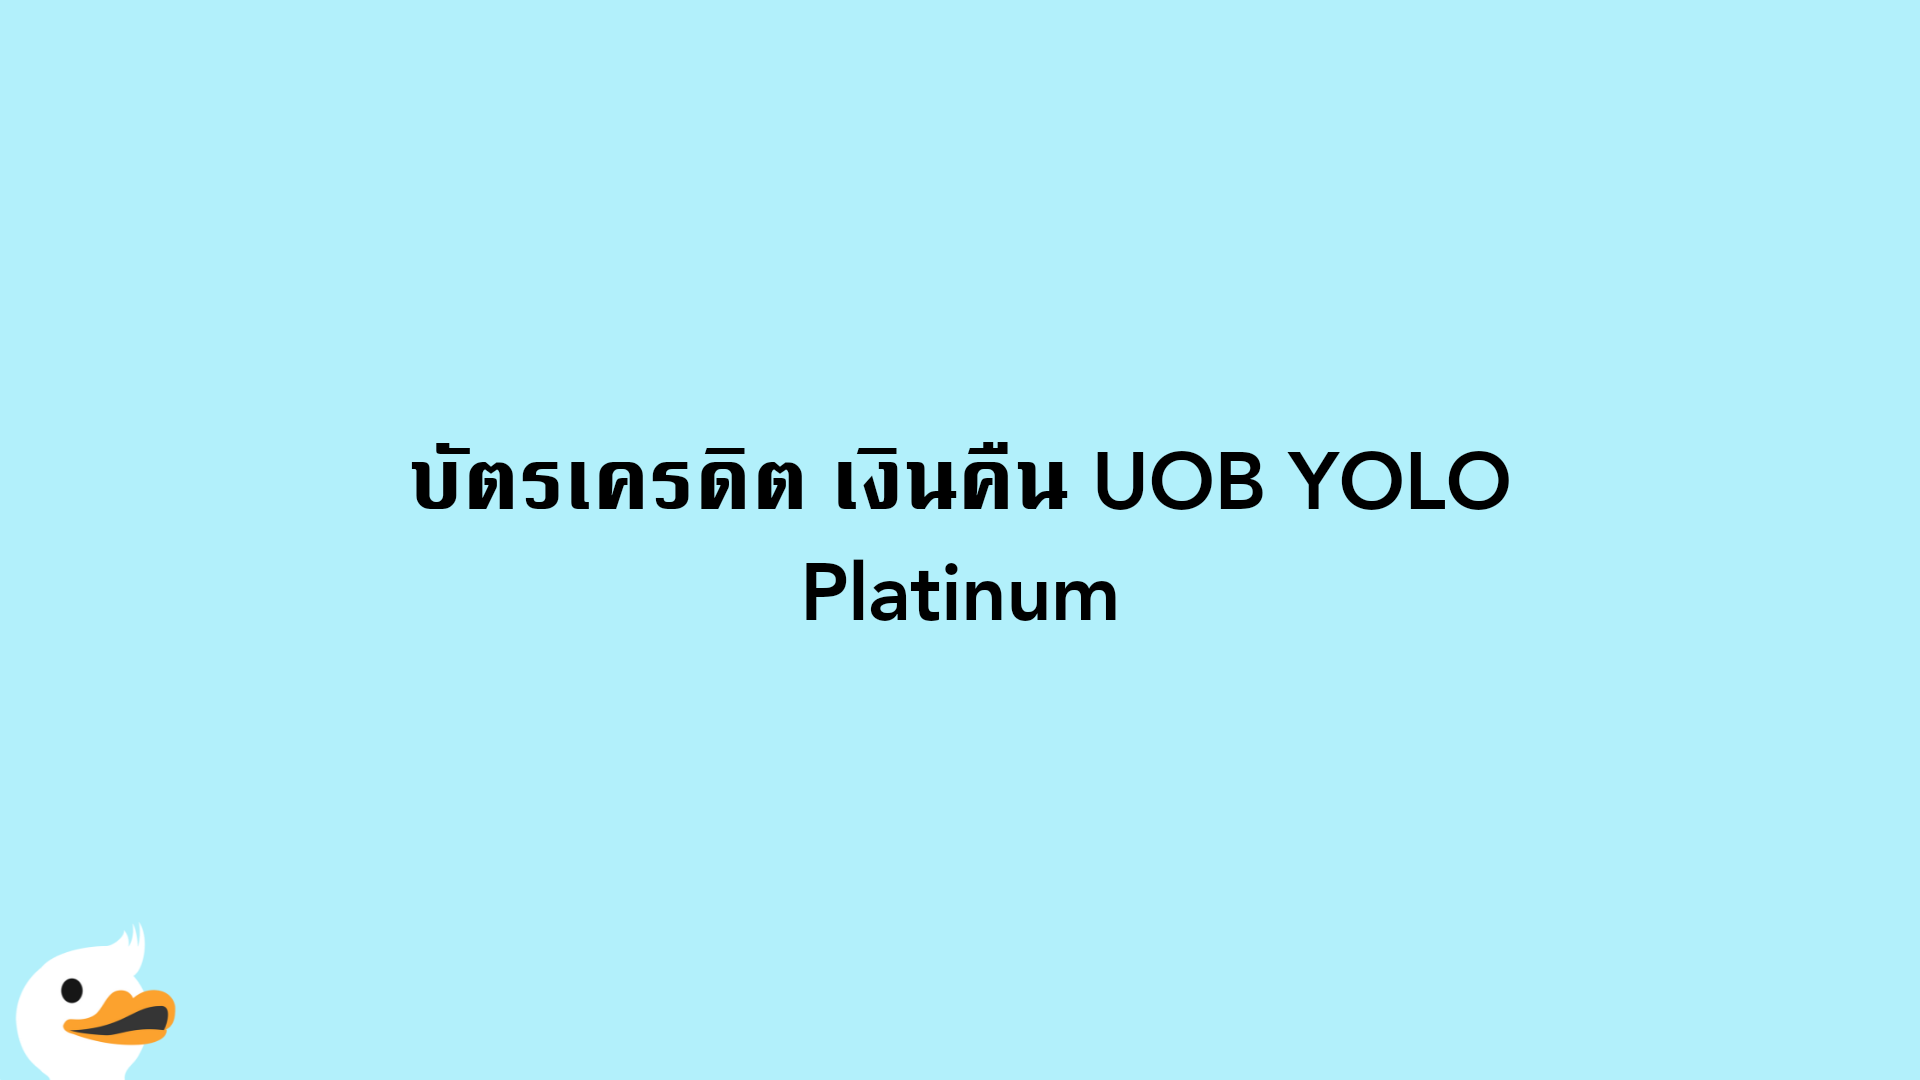 บัตรเครดิต เงินคืน UOB YOLO Platinum